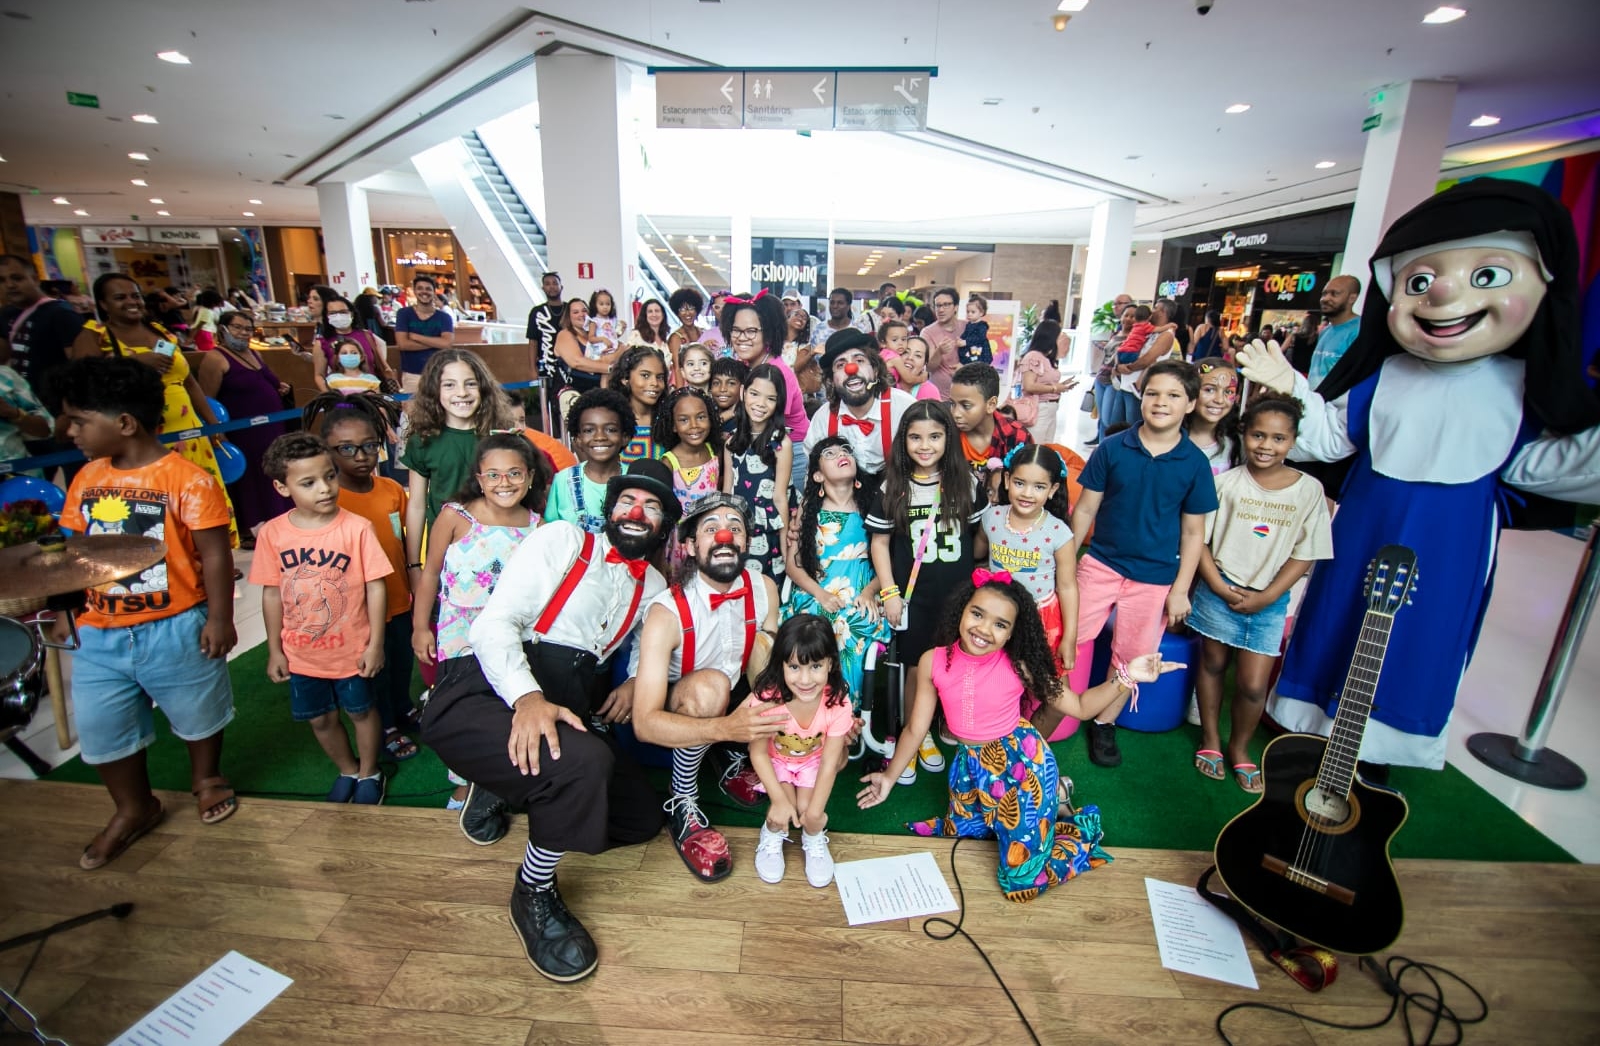 Shopping Bela Vista traz programação cultural e inclusiva gratuita para o Dia das Crianças